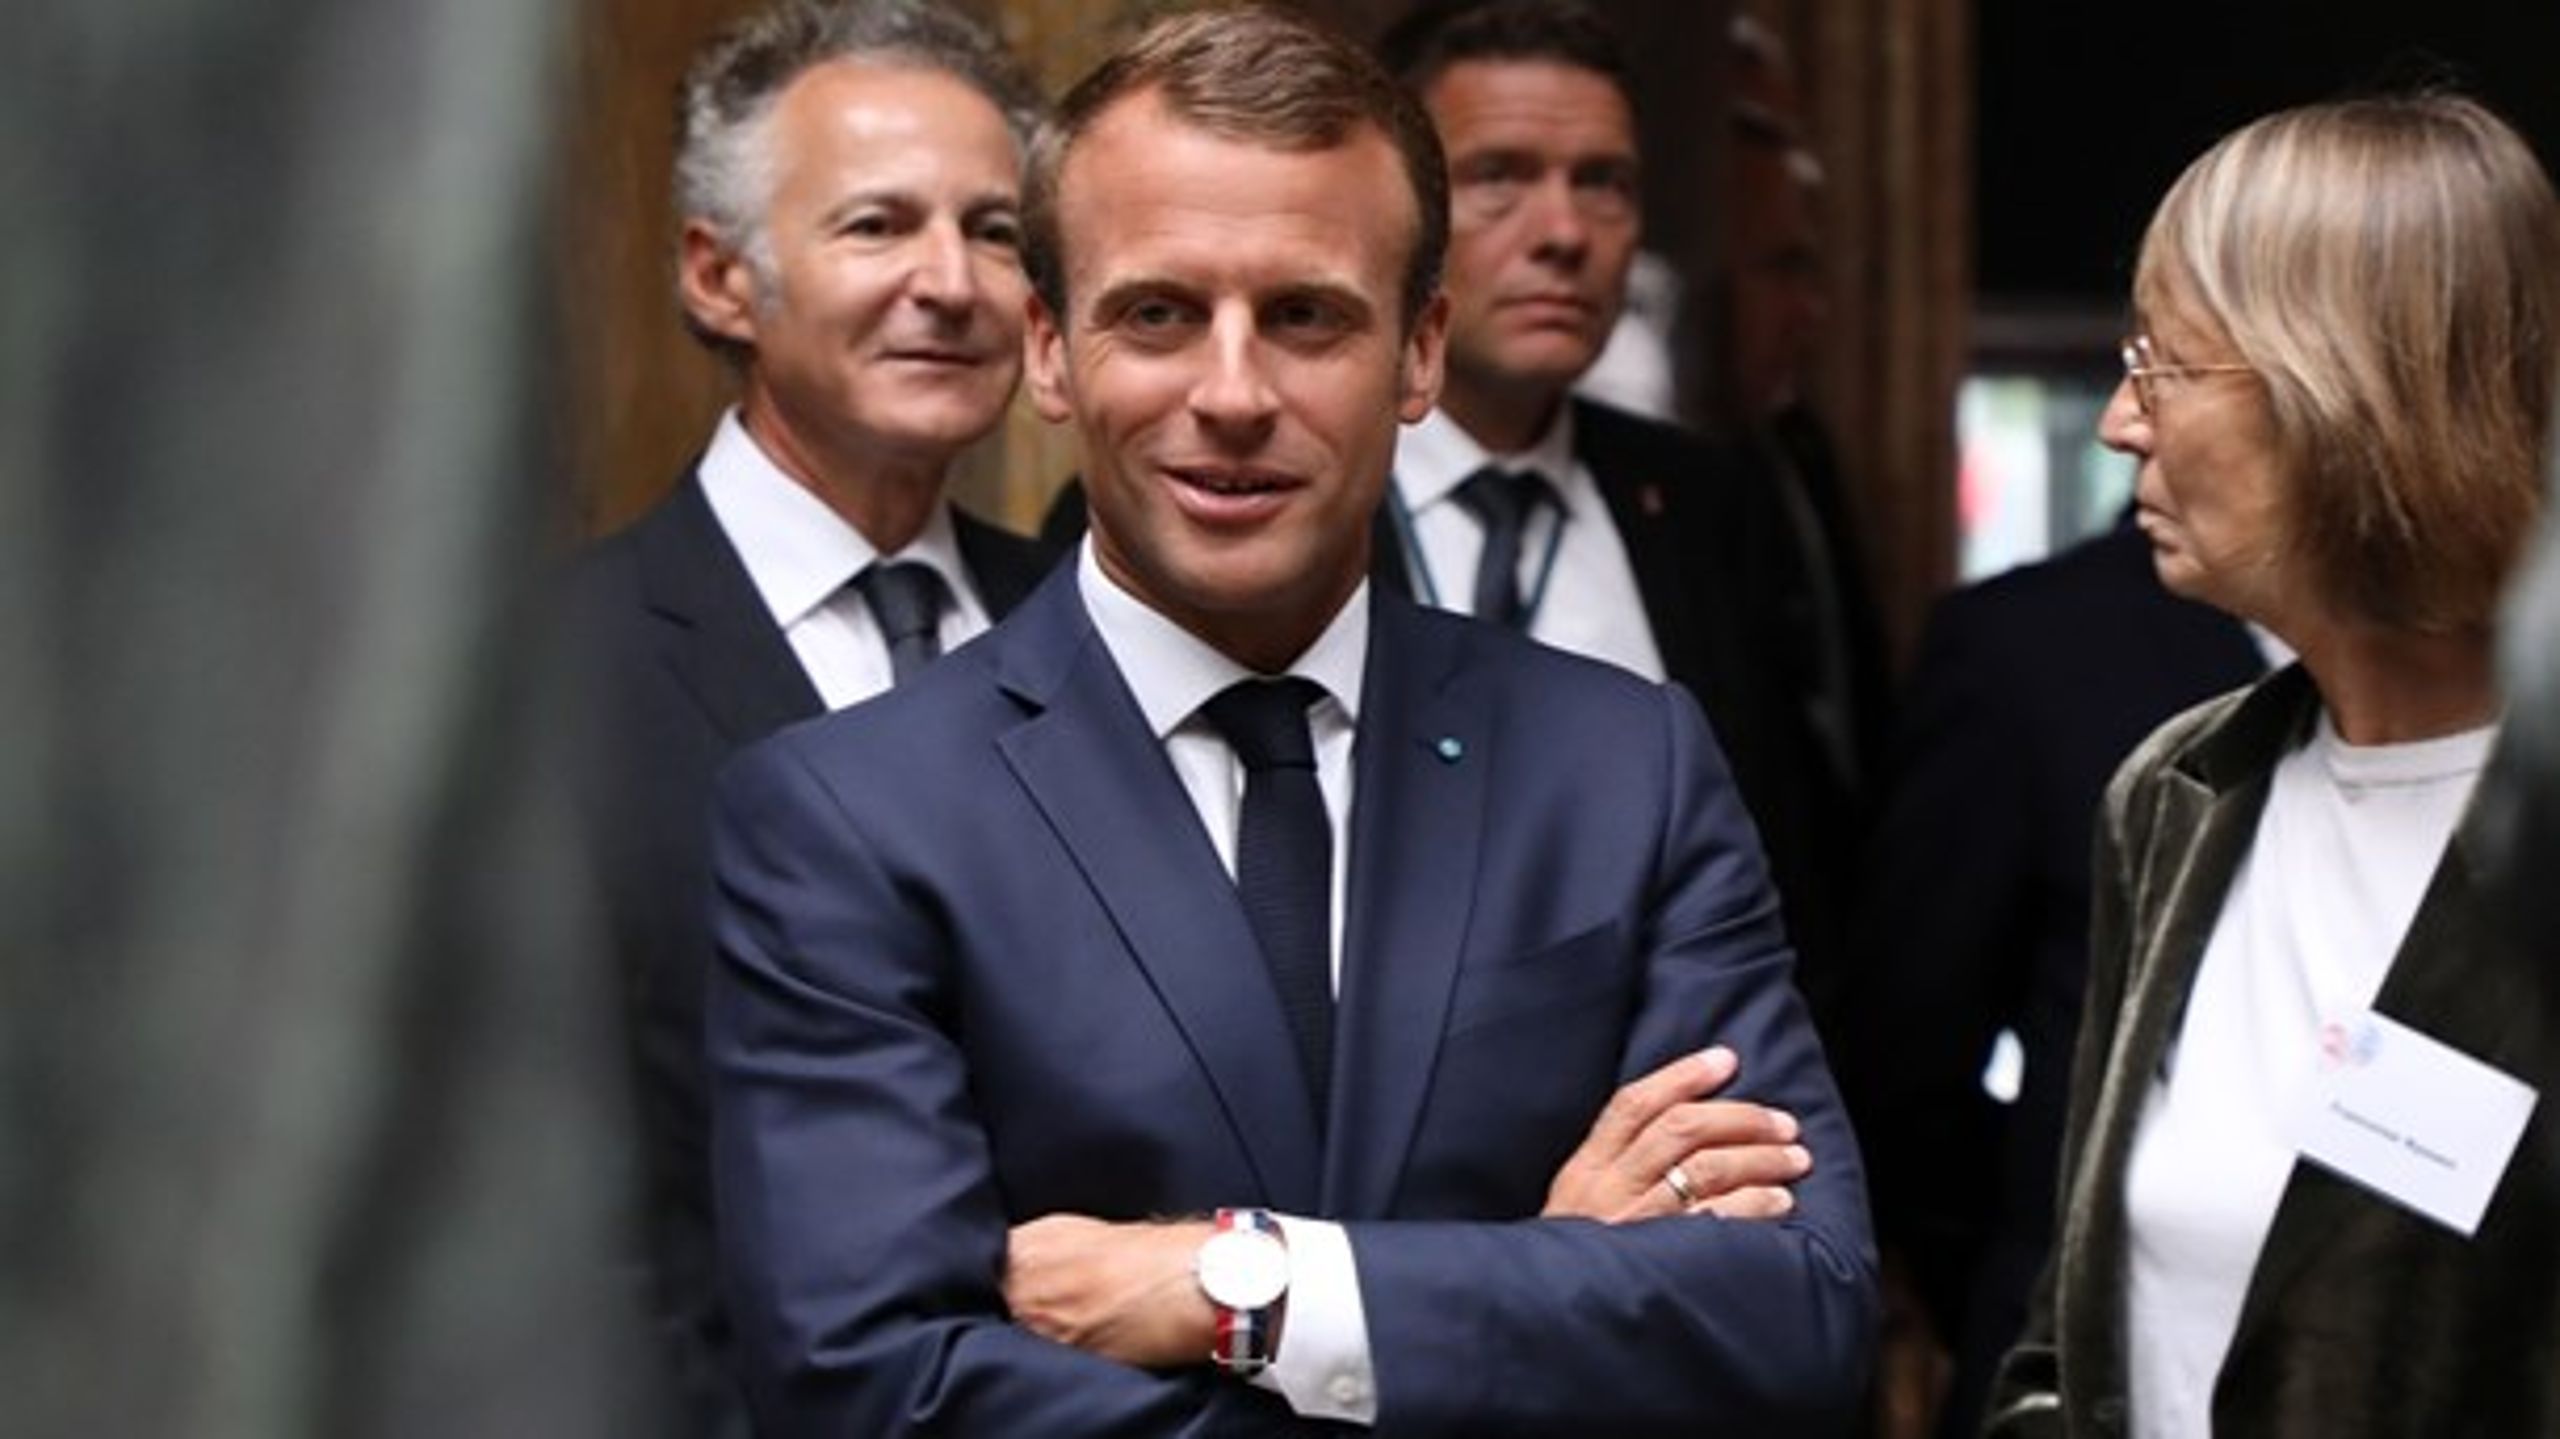 Lars Løkke Rasmussen og Emmanuel Macron klappede ikke kun hinanden på ryggen under præsidentens besøg. Der blev også talt politik.